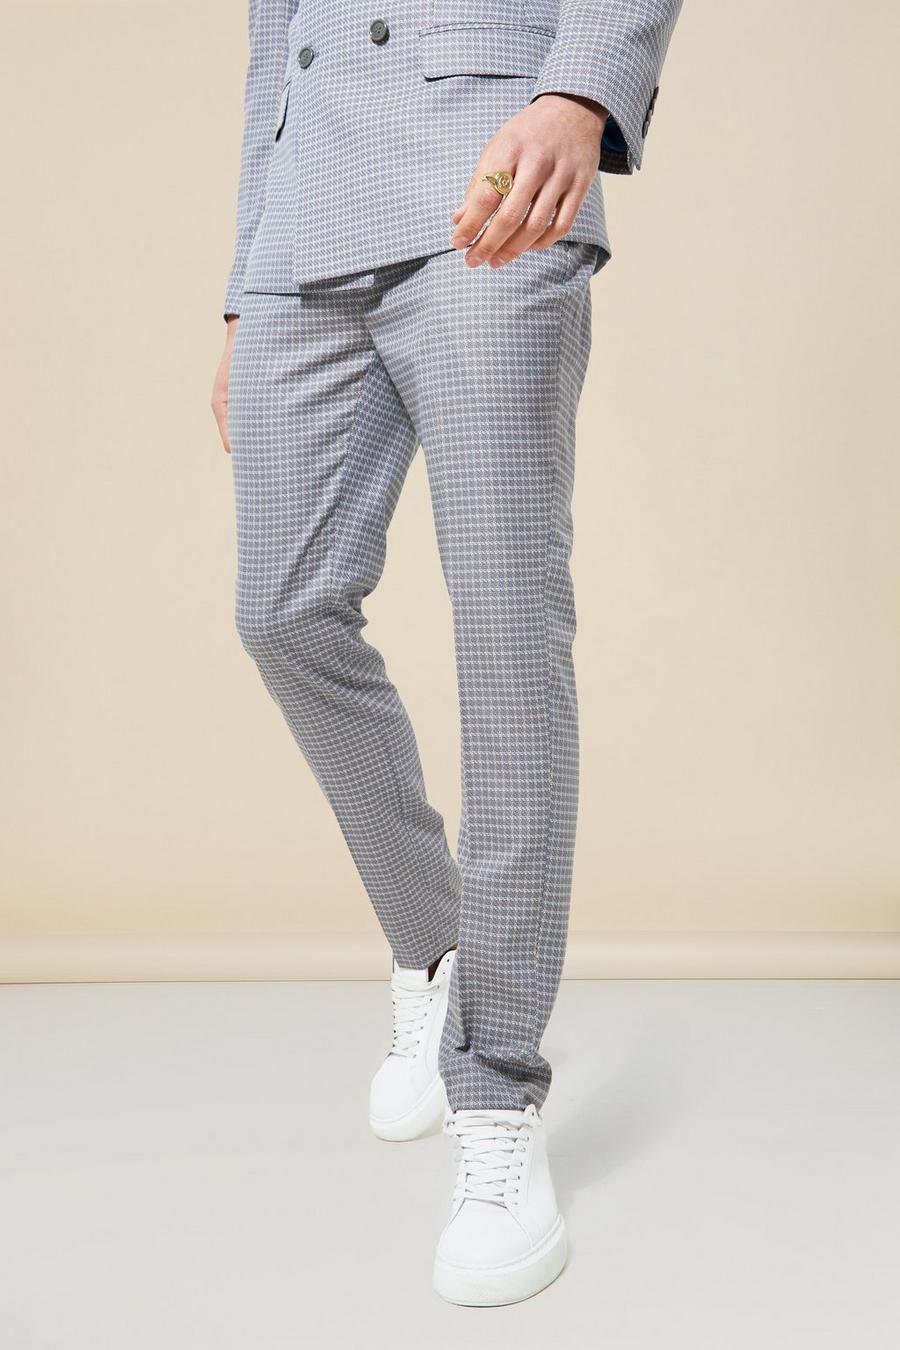 חאקי kaki מכנסי חליפה עם הדפס משבצות בגזרה צרה